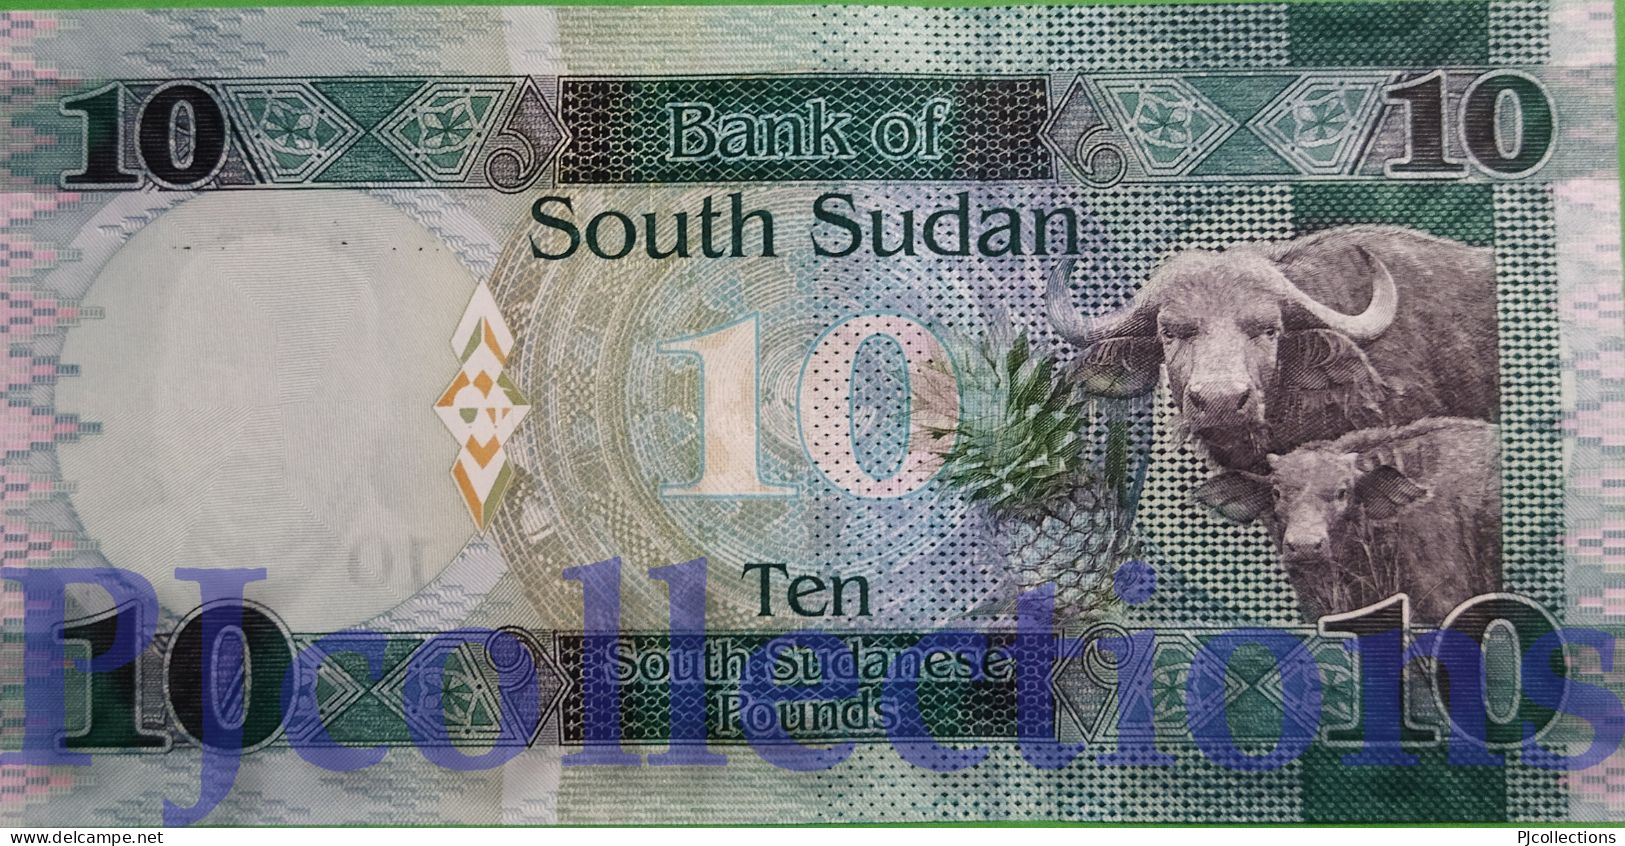 SOUTH SUDAN 10 POUNDS 2015 PICK 12a UNC - Sudan Del Sud